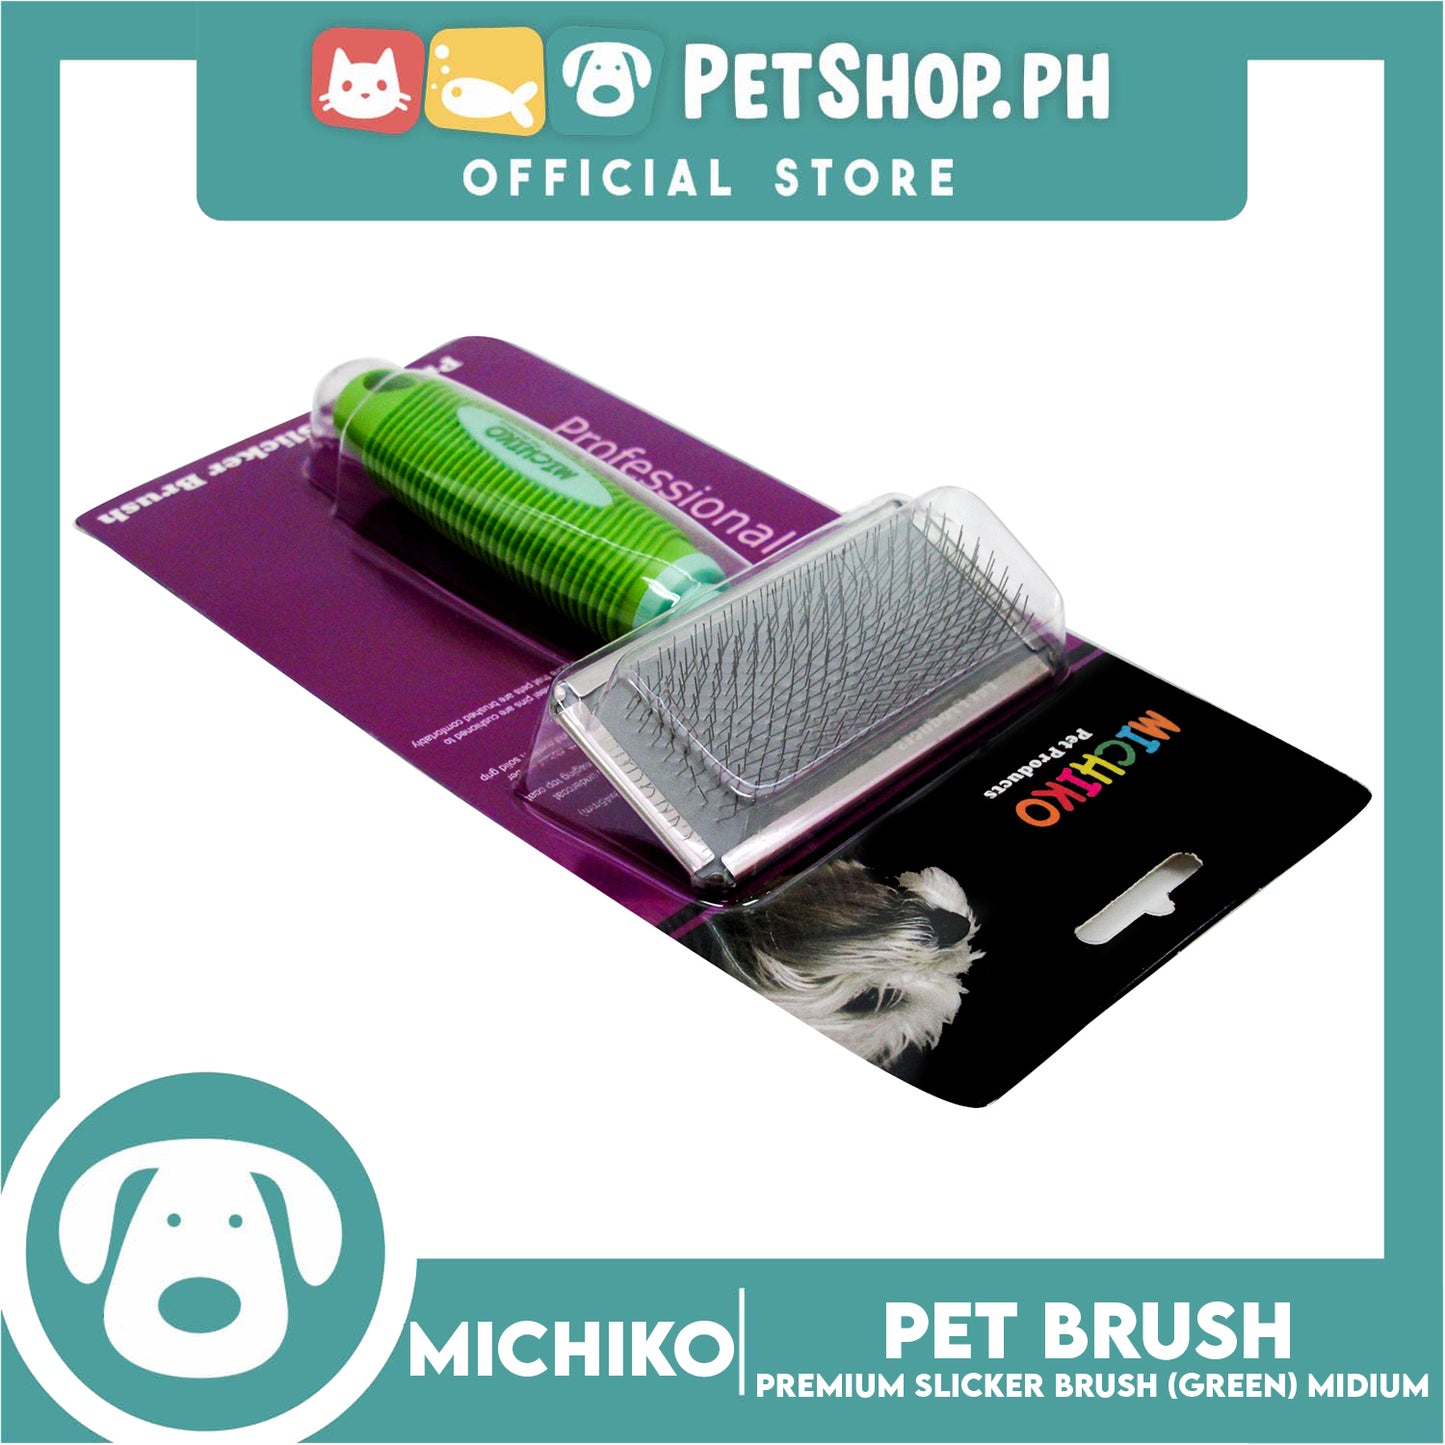 Michiko Premium Slicker Brush Green Color (Medium) Pet Brush, Pet Grooming